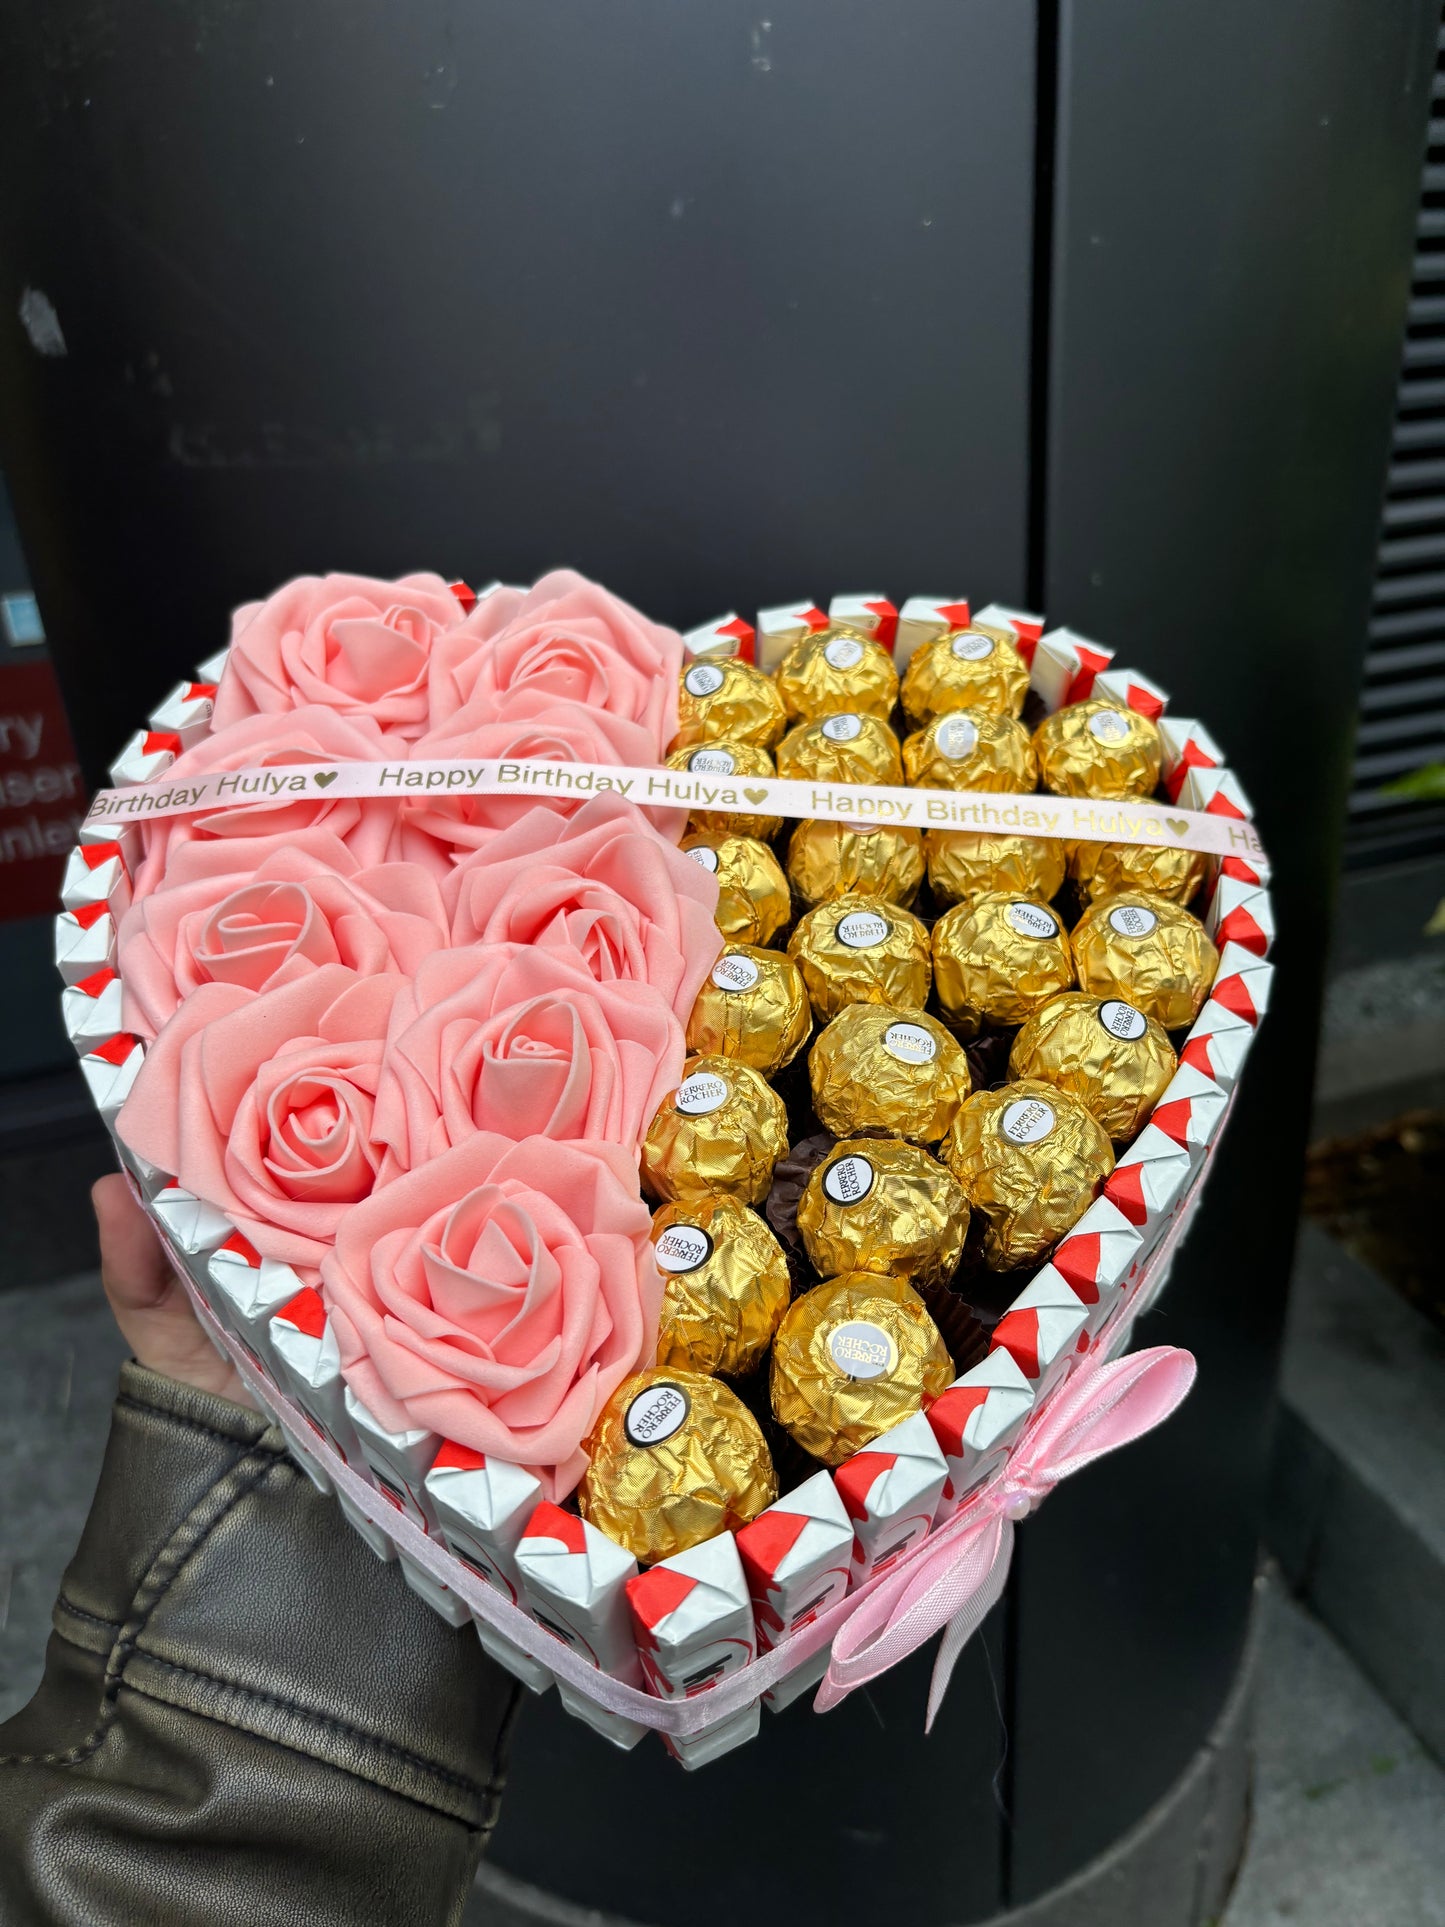 Kinder Ferrero Rocher & Rose Loveheart Hamper Gift